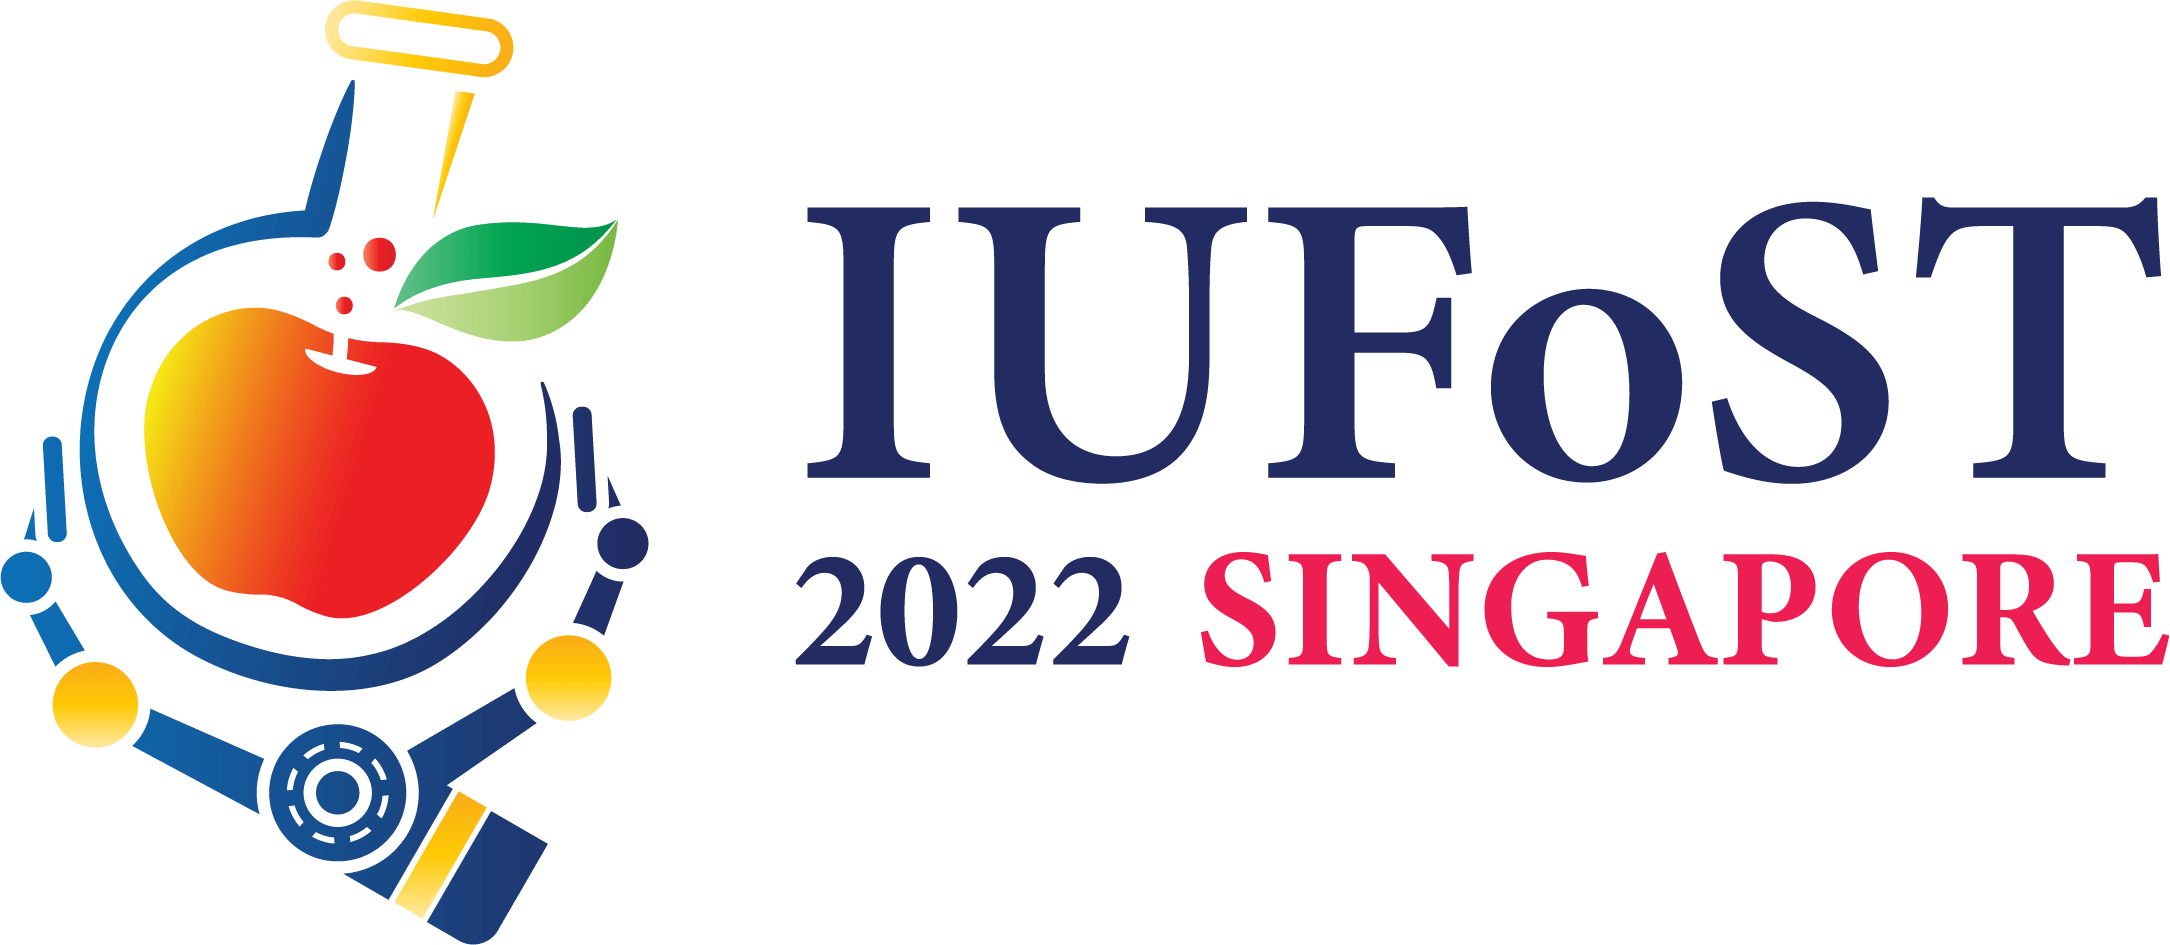 IUFoST 2022 Singapore Logo